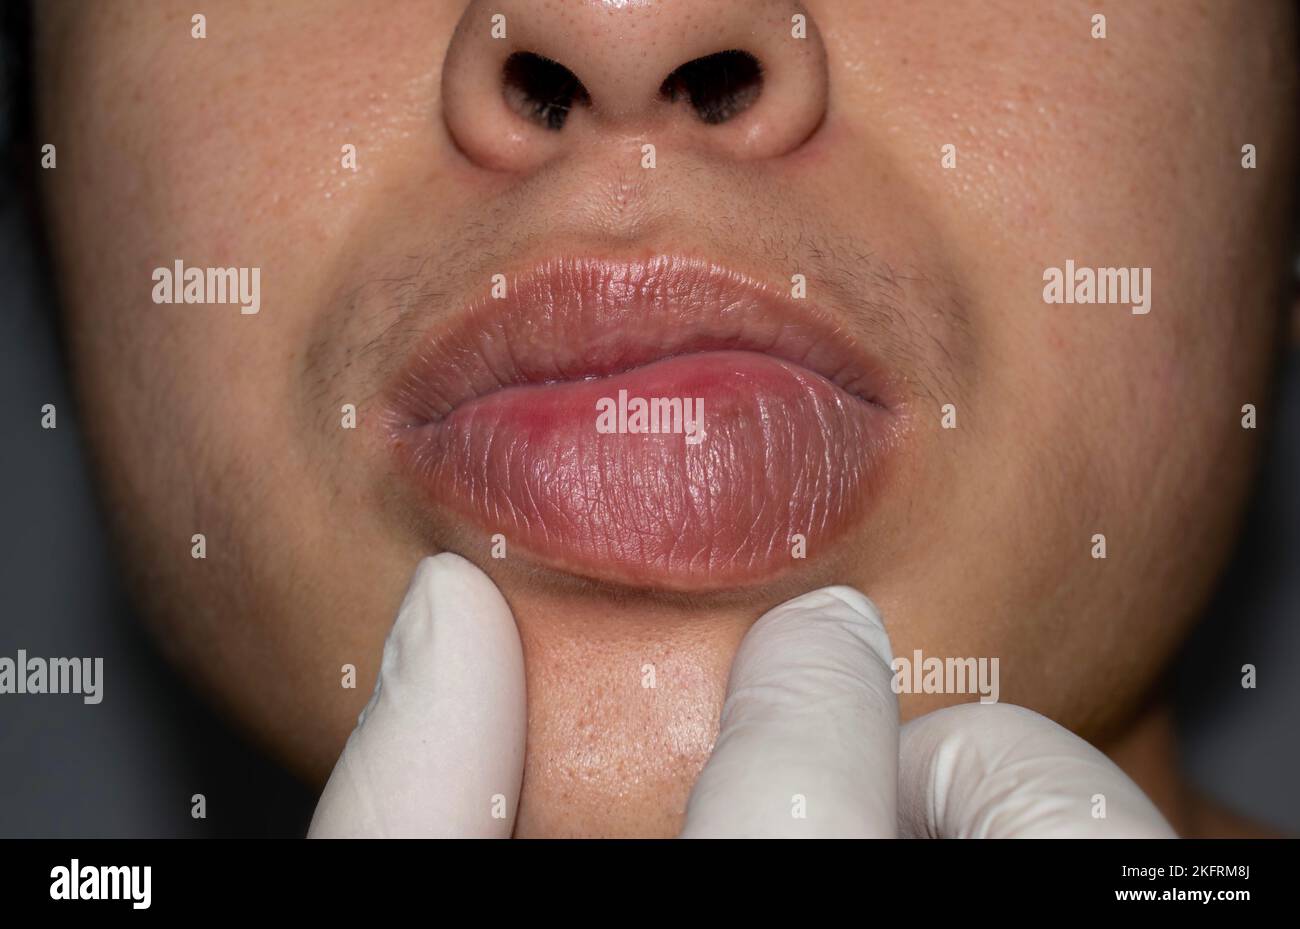 Lèvre gonflée ou épaissie du jeune homme asiatique. Œdème de Quincke. Les causes peuvent être des allergies, des infections, des blessures, etc Banque D'Images